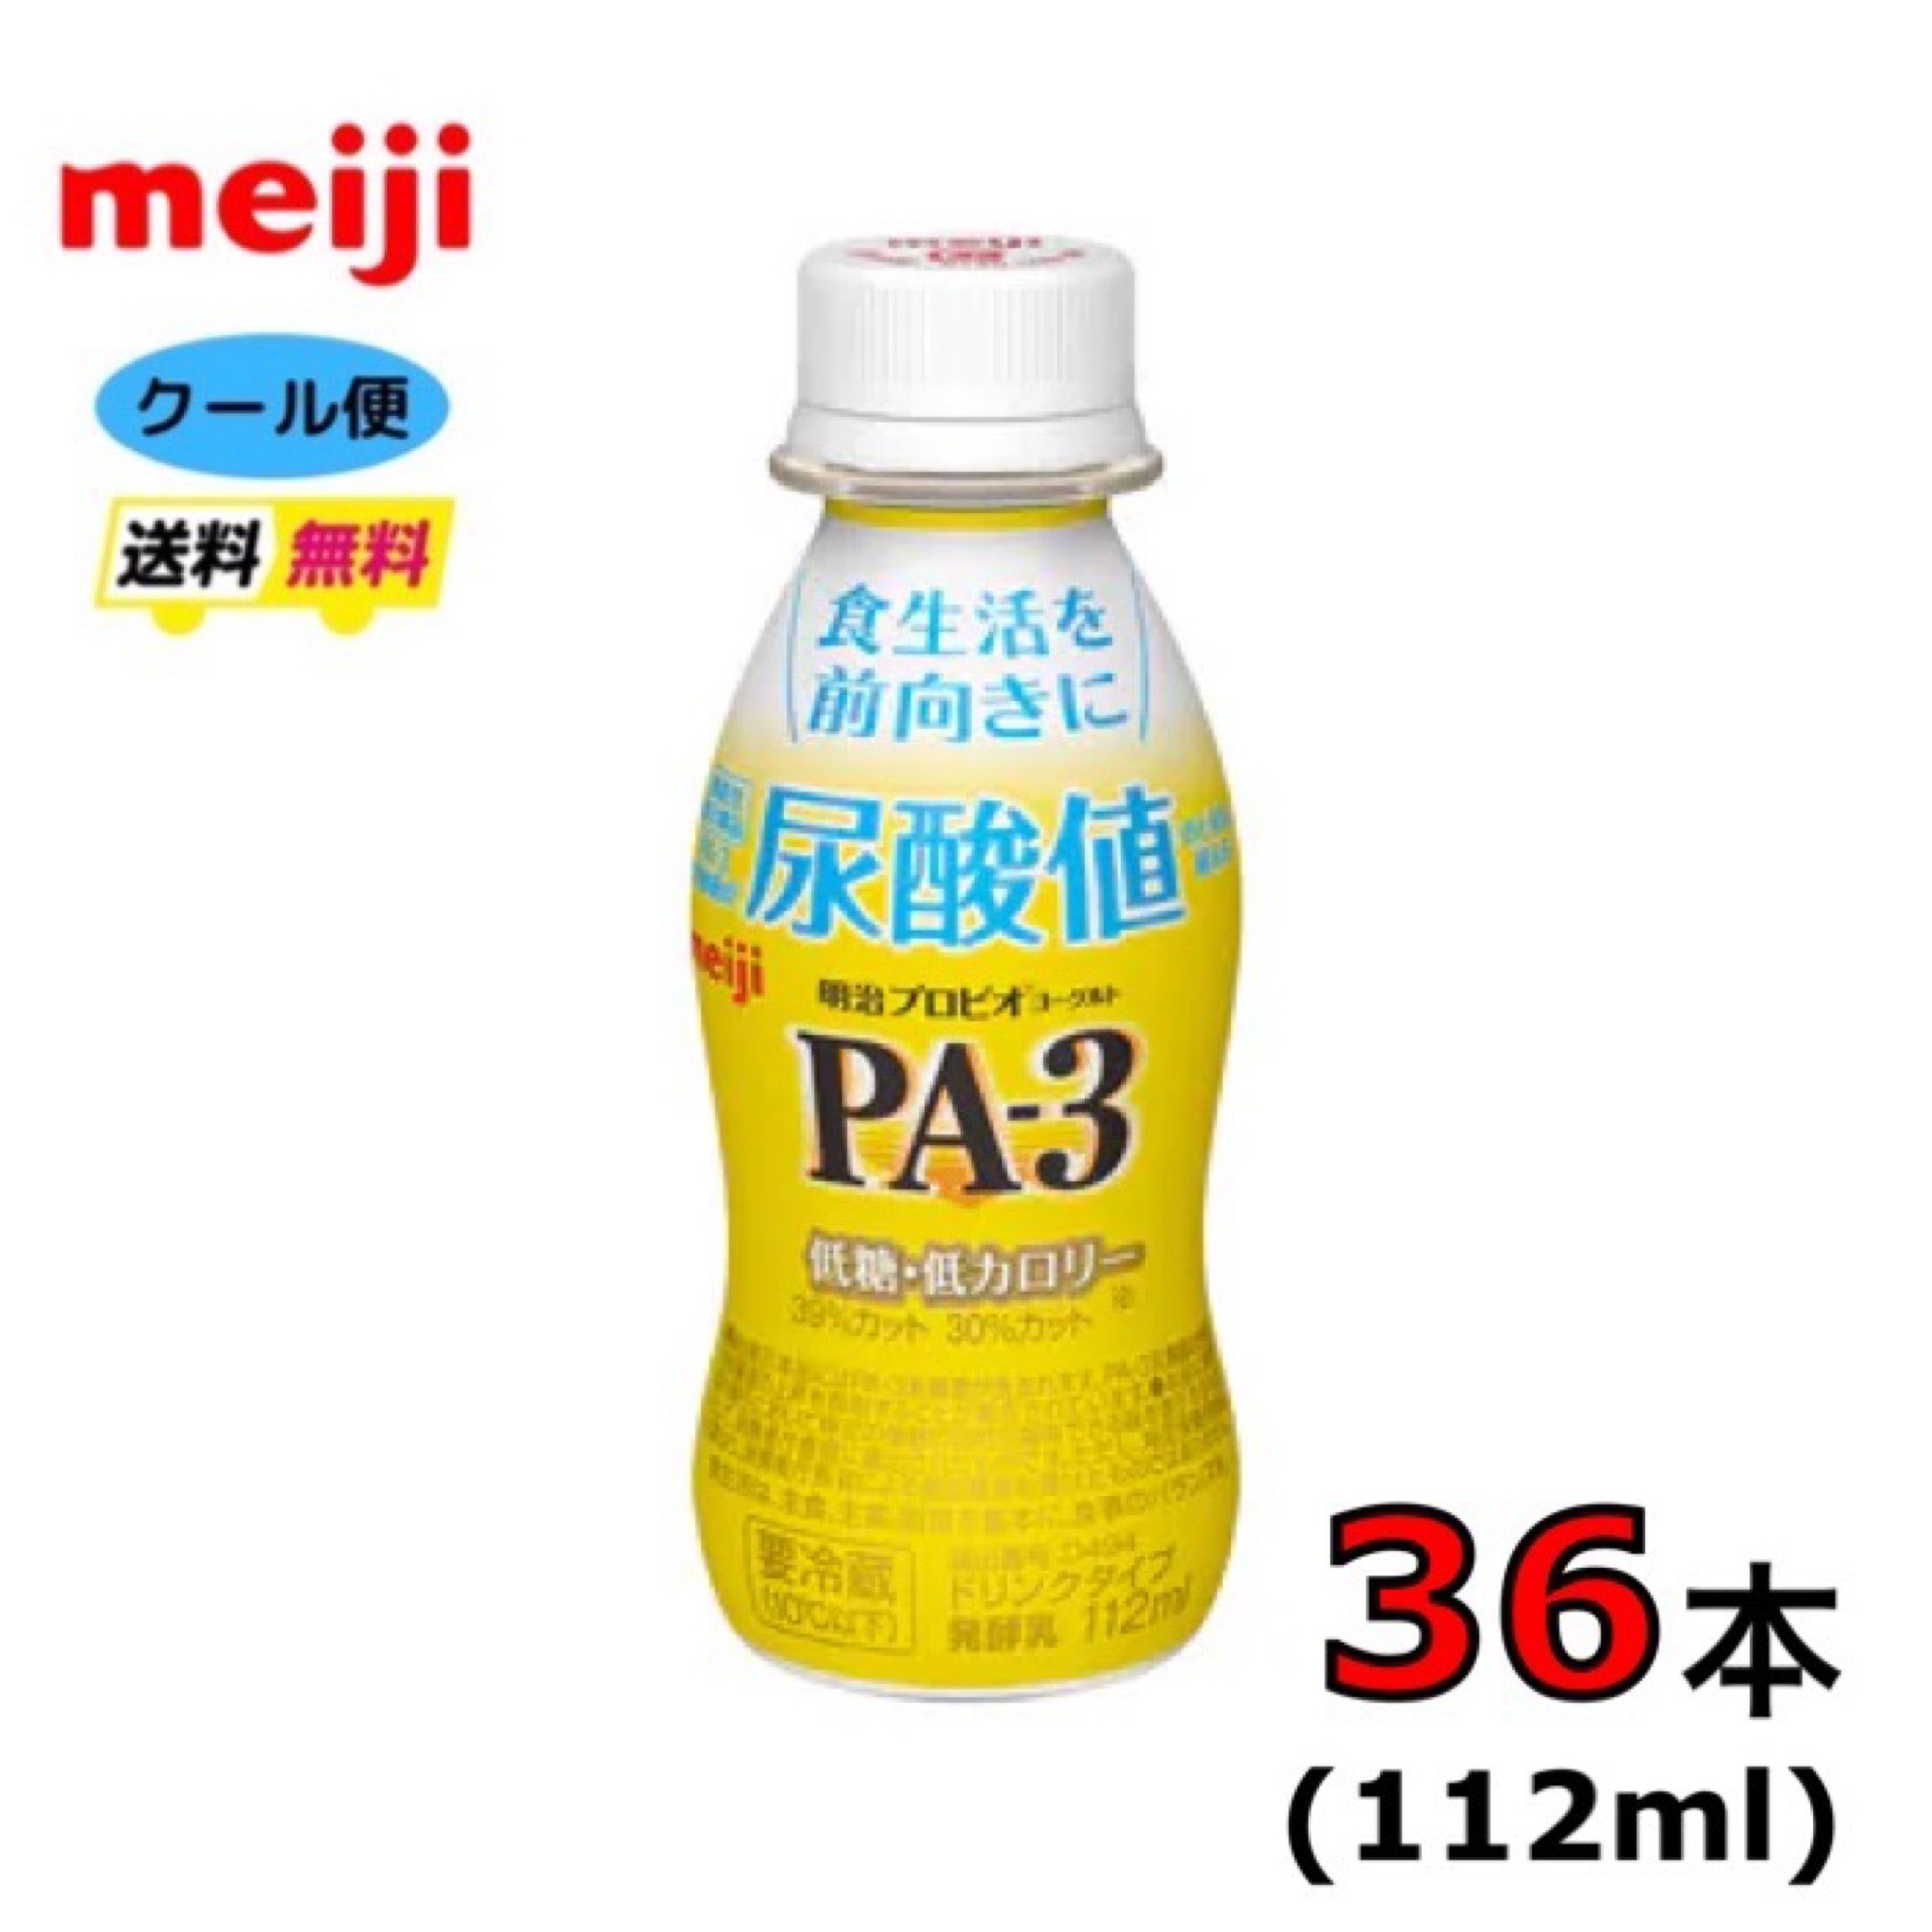 明治プロビオヨーグルトPA-3ドリンクタイプ 112ml 内容量 112ml 原材料 乳製品、砂糖／安定剤（ペクチン）、甘味料（アスパルテーム・L-フェニルアラニン化合物、ステビア）、香料、茶抽出物 栄養成分 1本（112ml）あたり エネルギー 50kcal たんぱく質 3.4g 脂質 0.6g 炭水化物 7.8g －糖類 6.6g 食塩相当量 0.12g カルシウム 125mg 賞味期限 約2週間（11～14日） 保存方法 要冷蔵（10℃以下） 備考 〇北海道の方は、3980円未満の場合、1000円上乗せとなります。ご理解よろしくお願い致します。 〇クール便での発送となります。